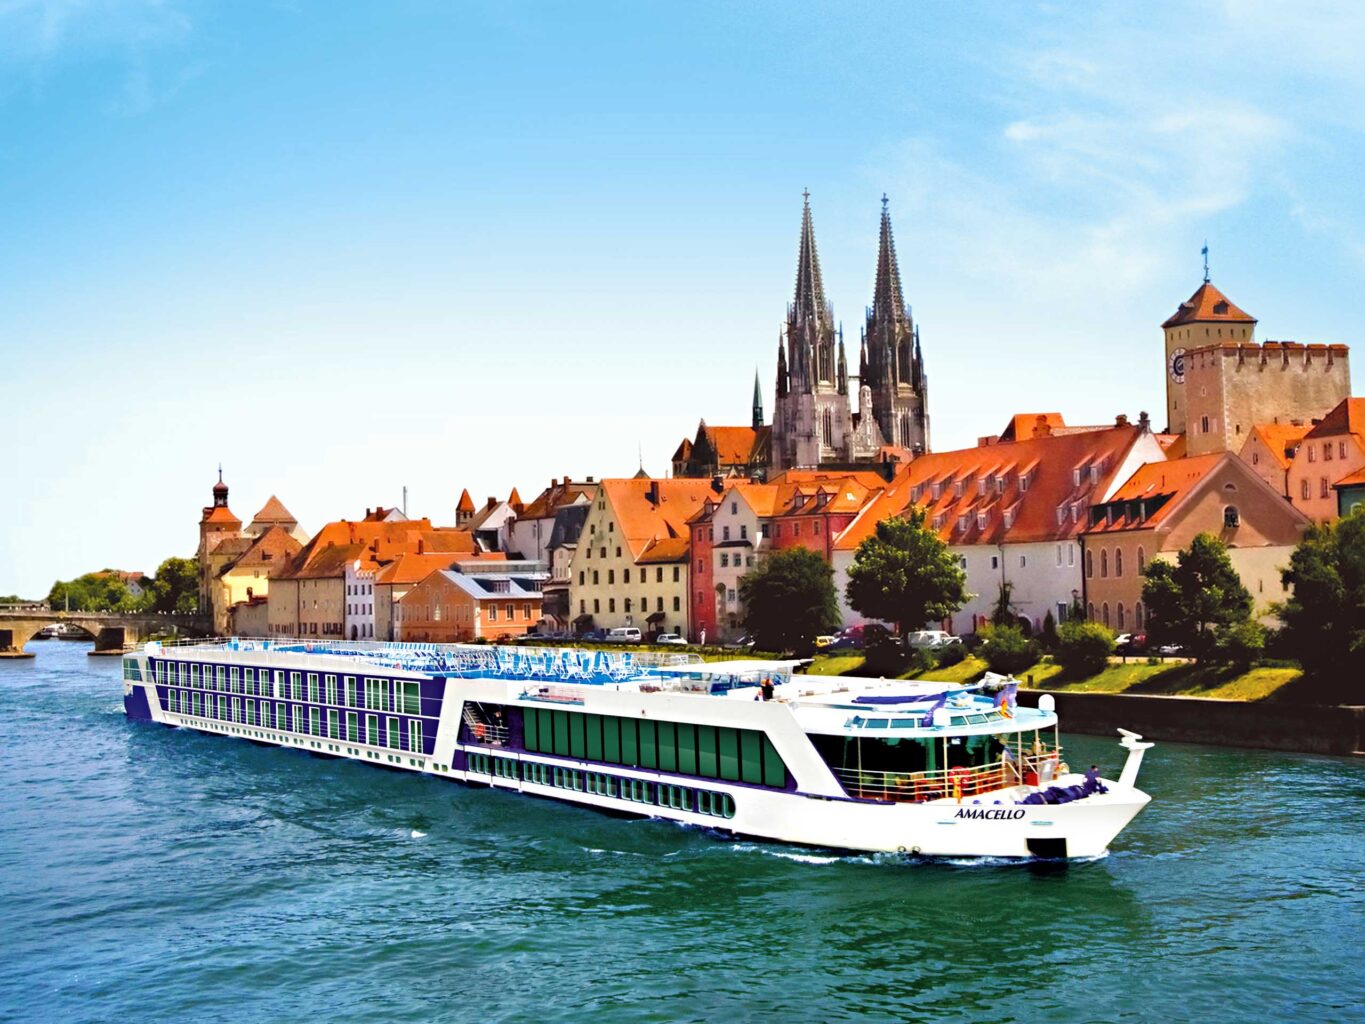 A cruise in Danube.